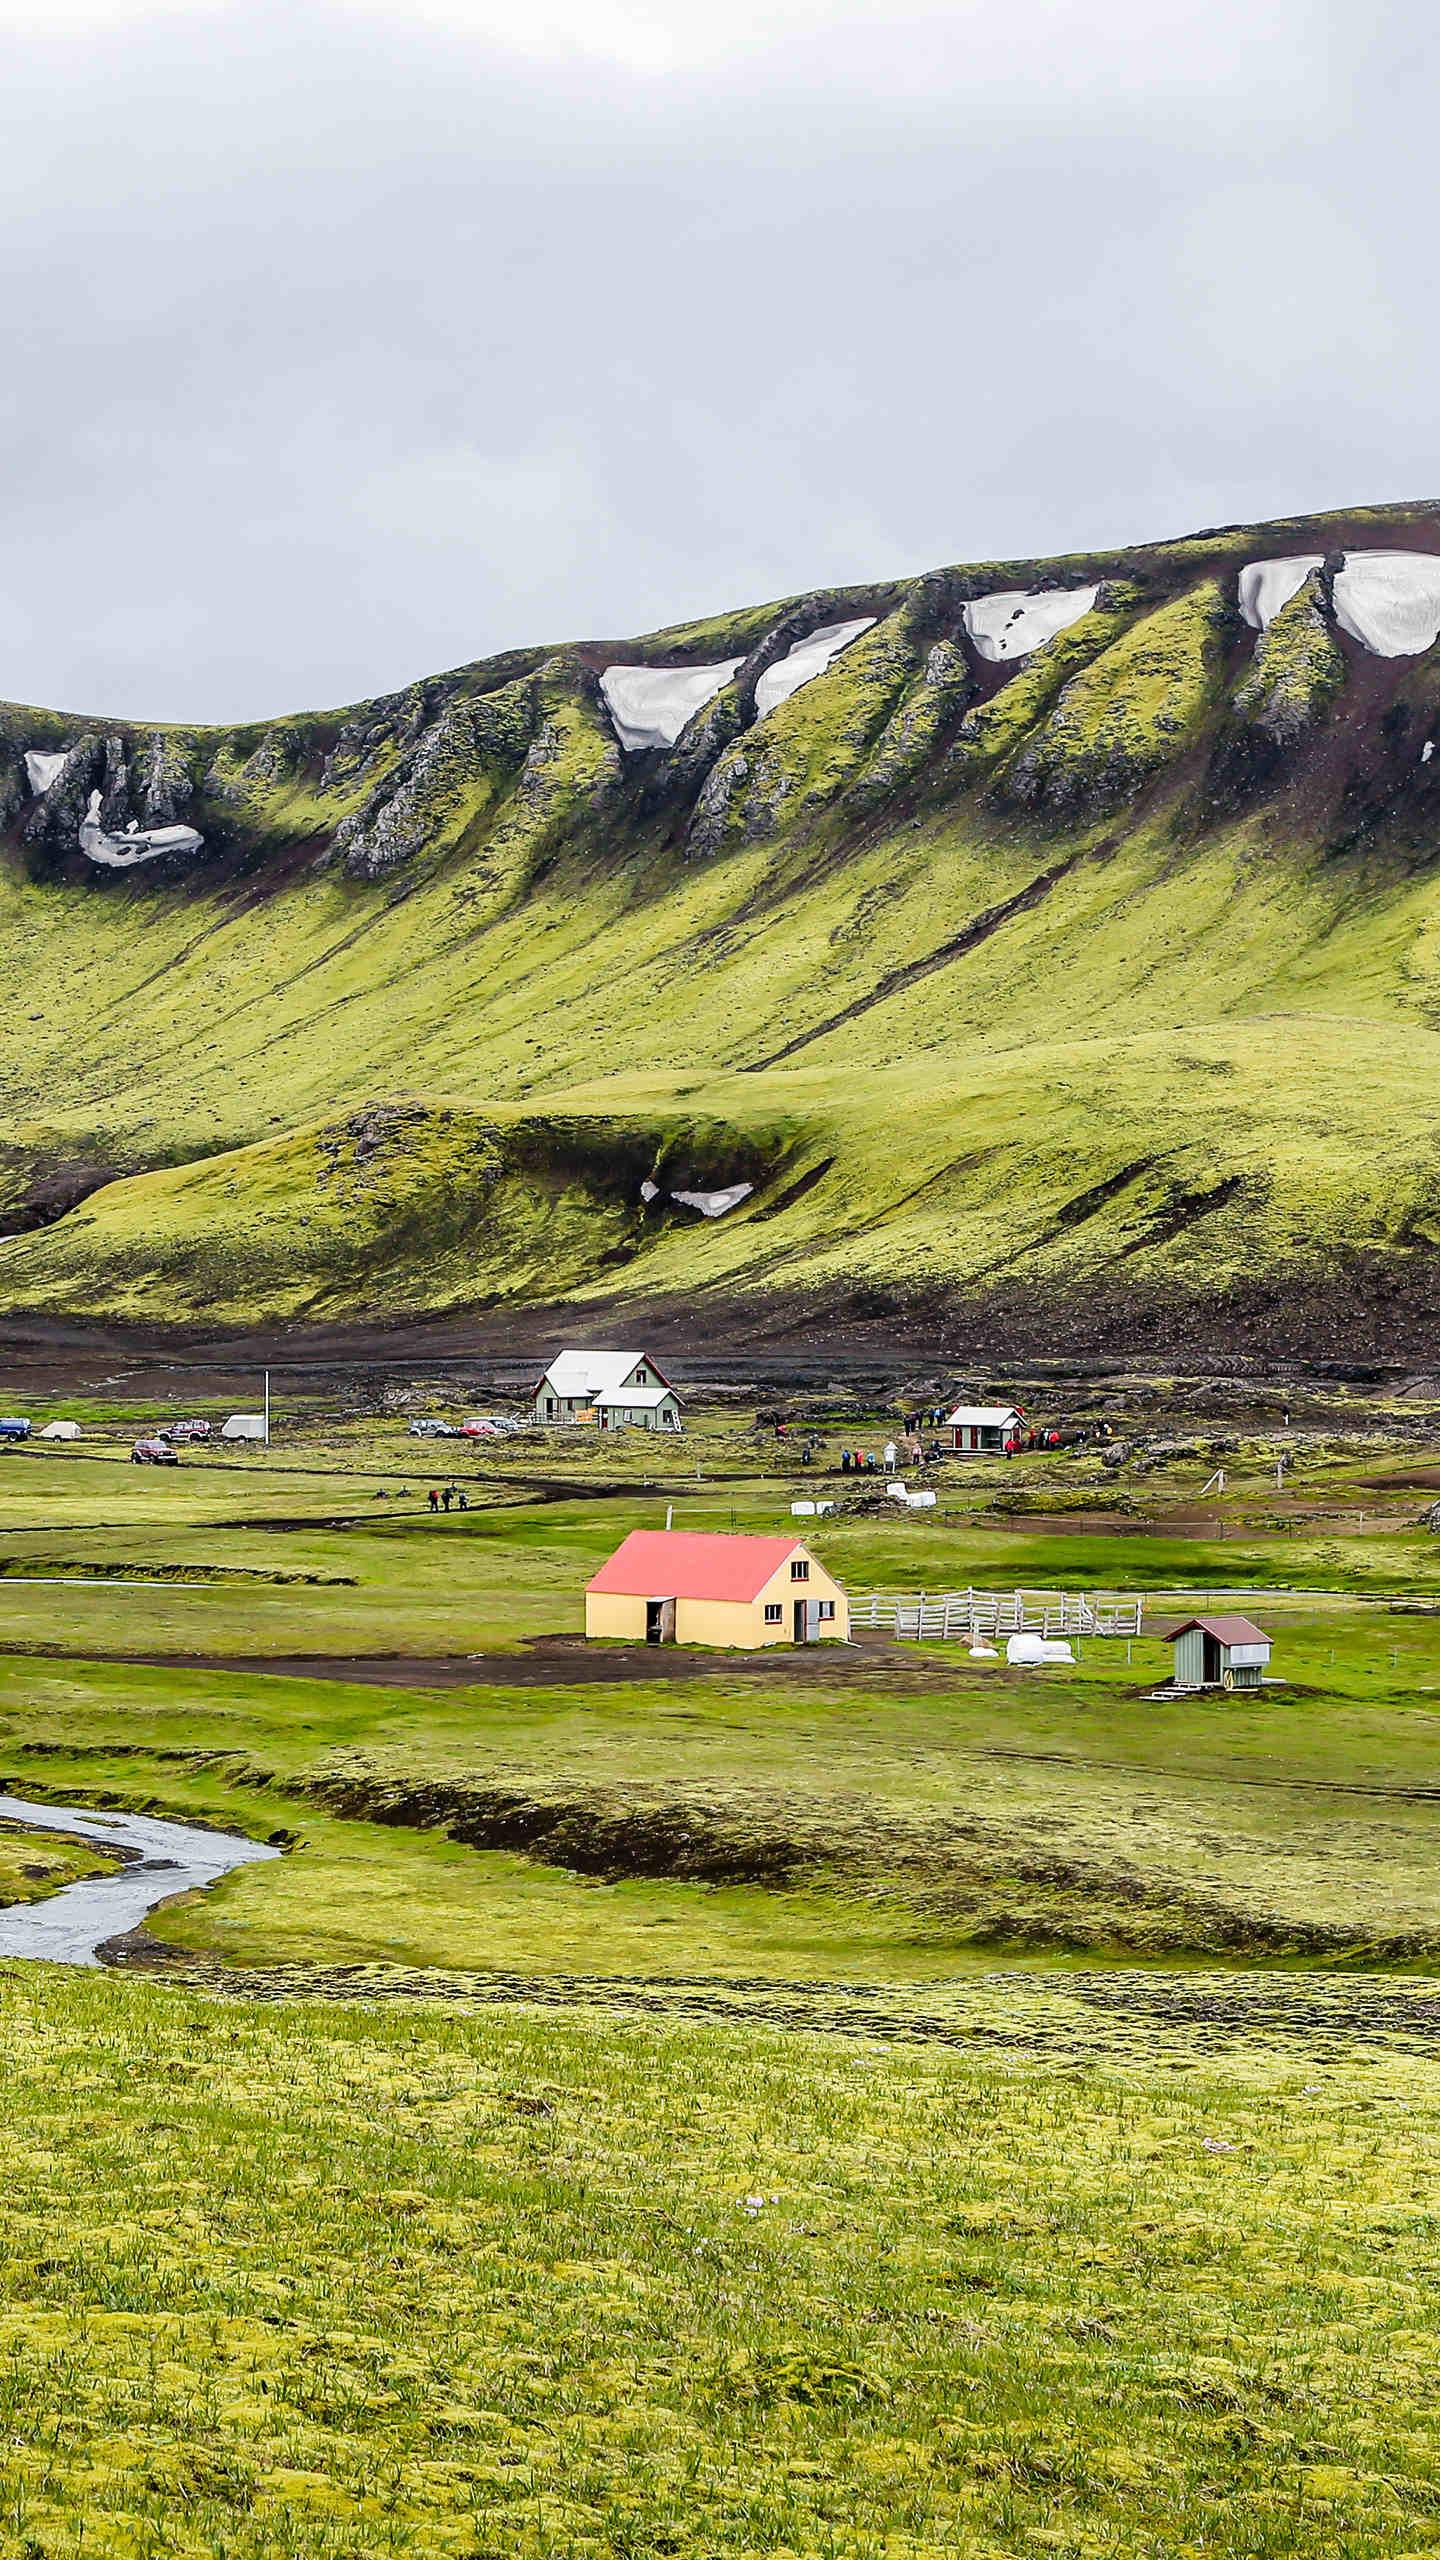 冰岛植被图片